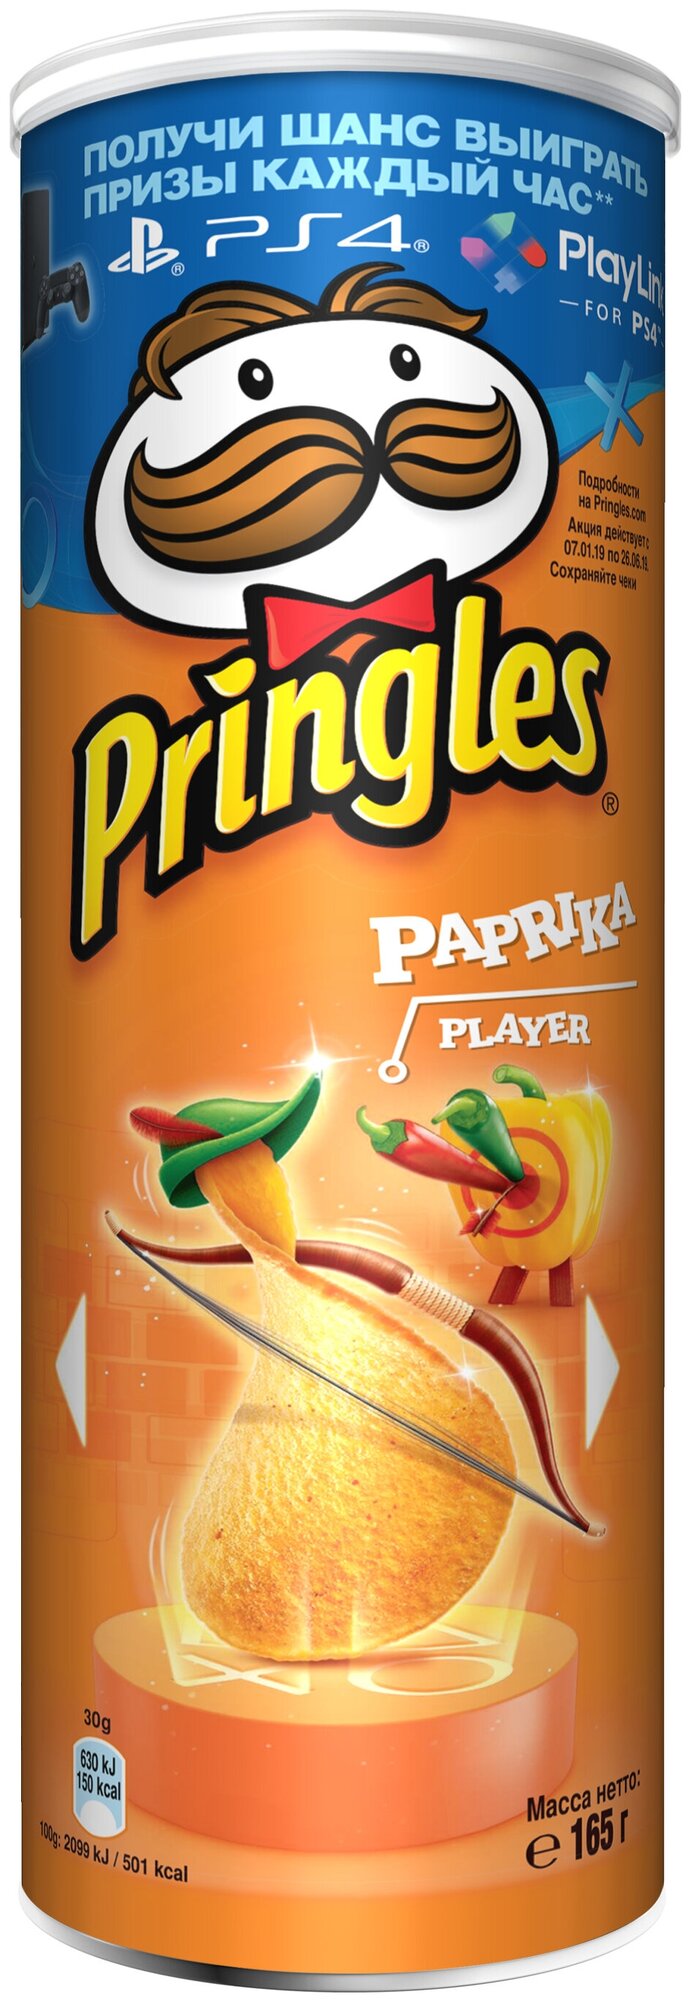 Чипсы Pringles картофельные со вкусом паприки 165г